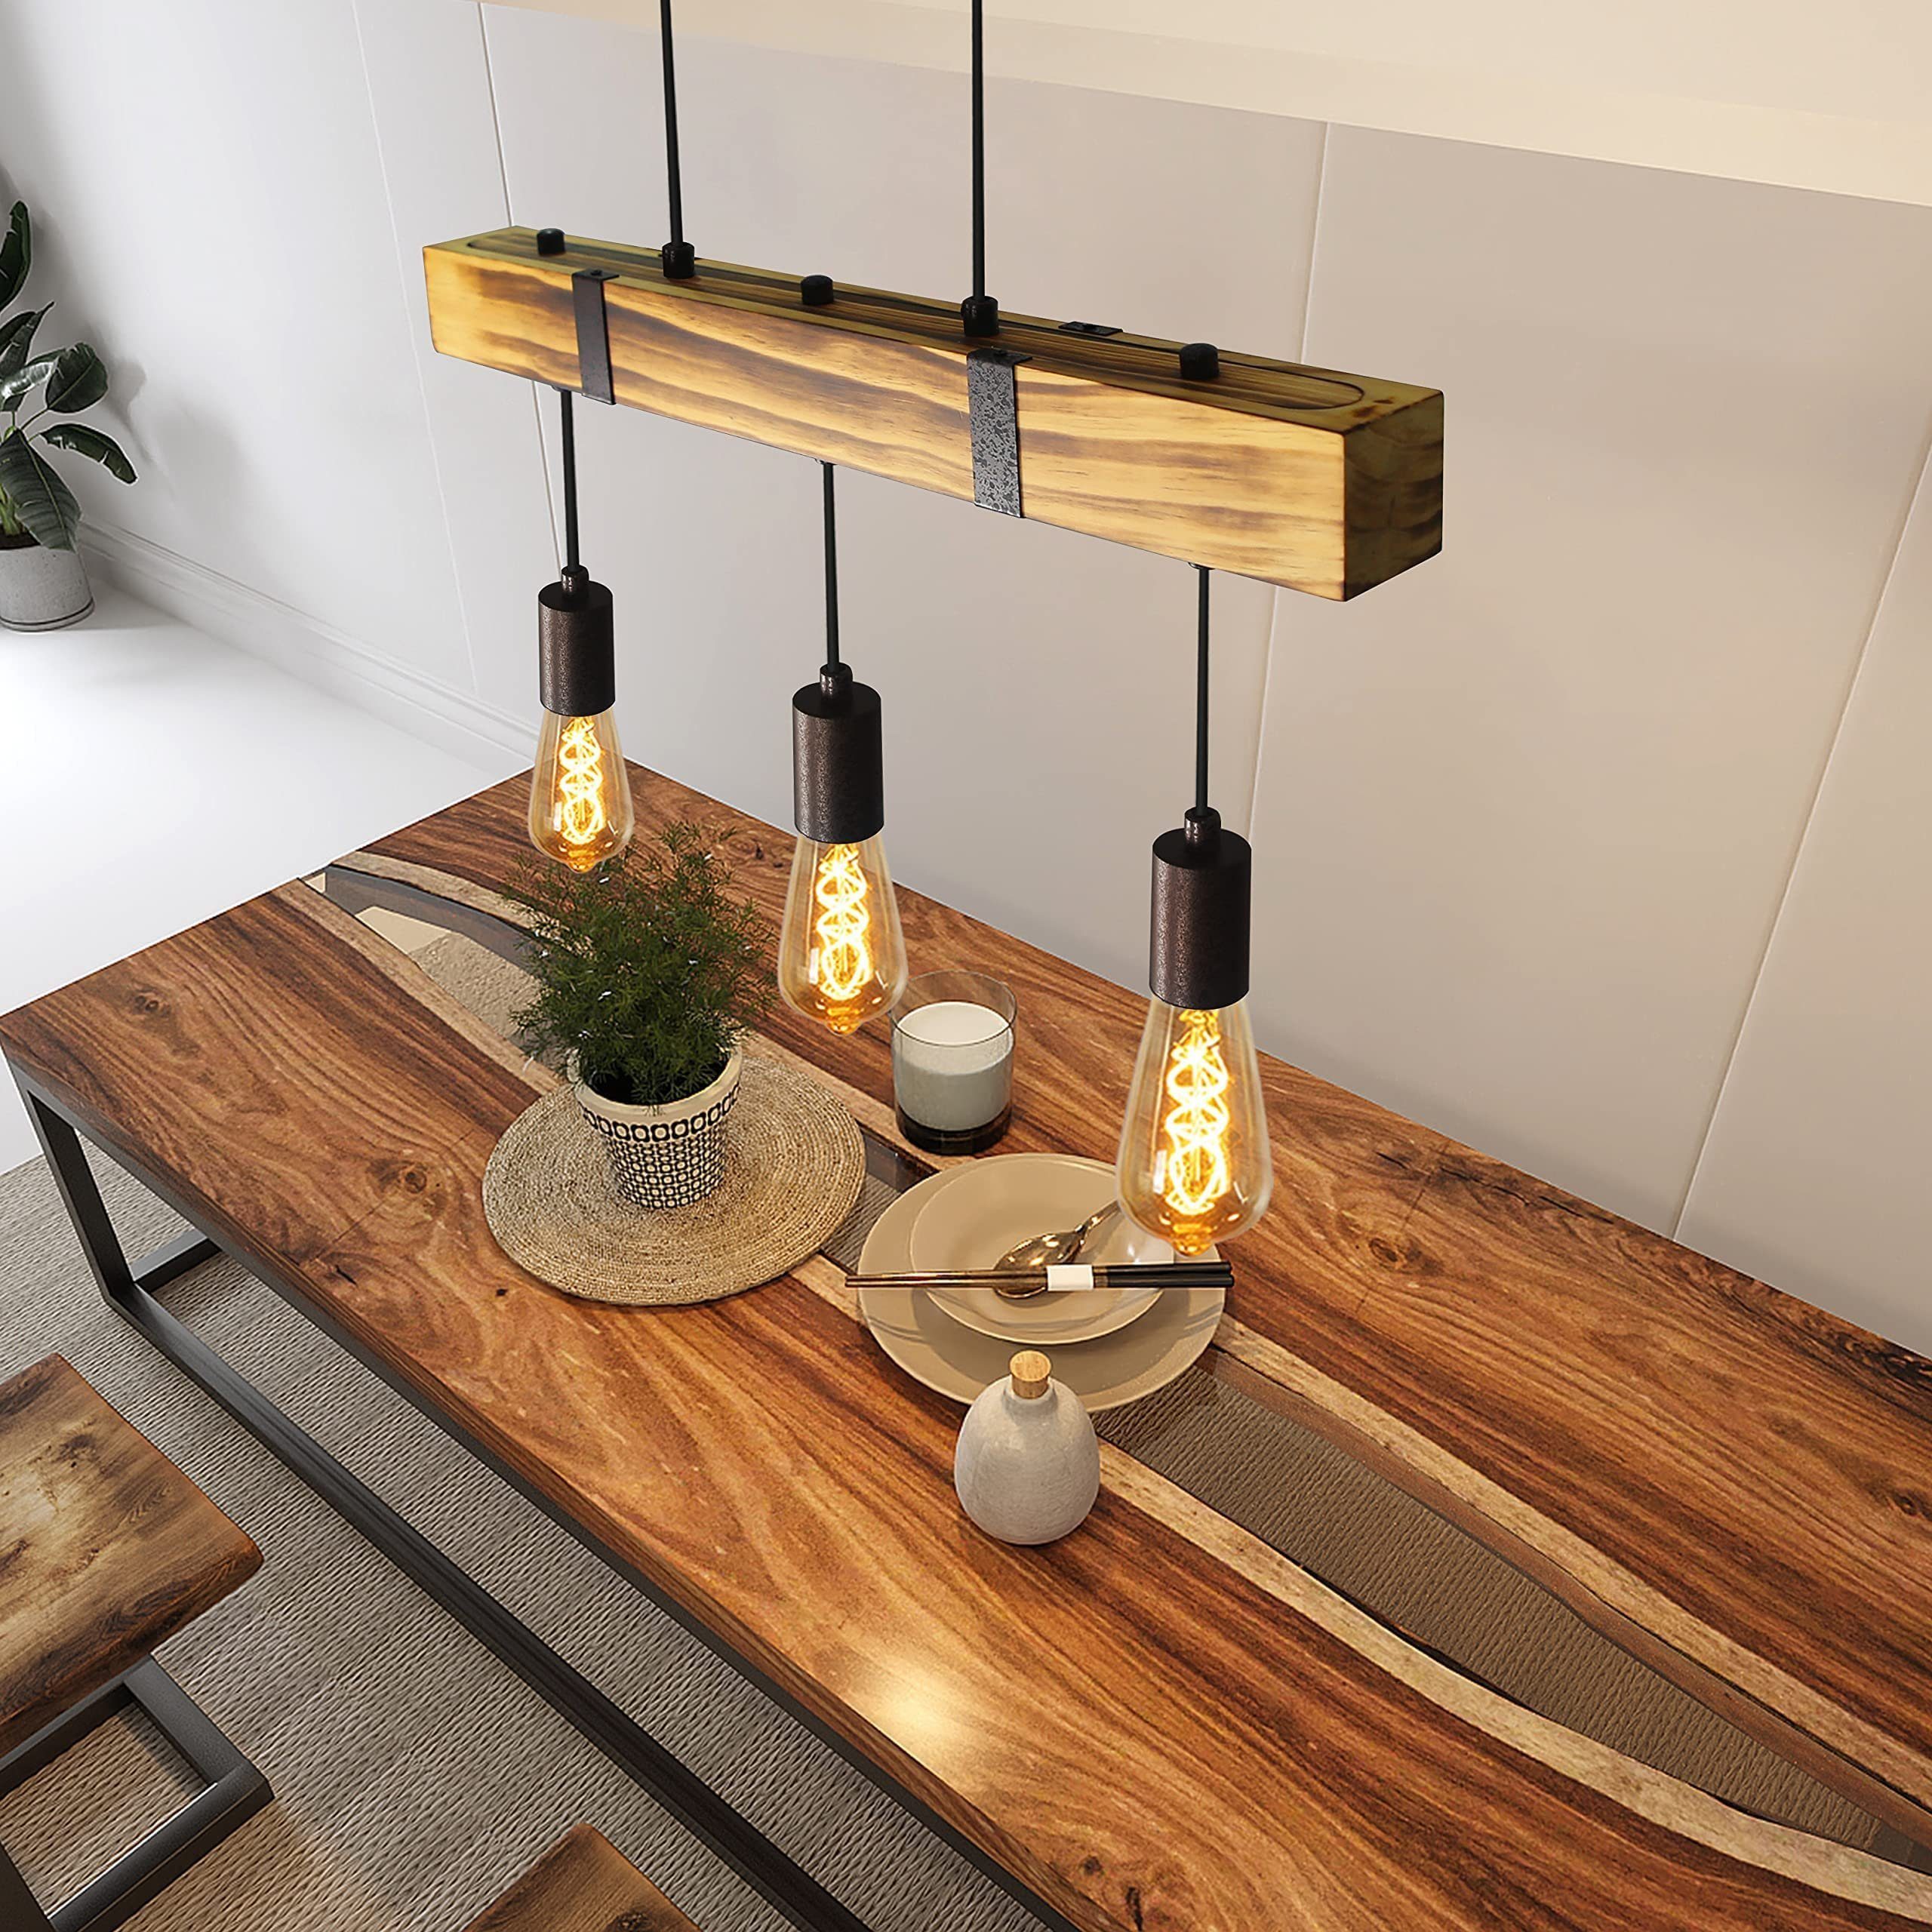 Holz Pendelleuchte Industrial ohne Leuchtmittel E27 Höhenverstellbar Küche ZMH Wohnzimmer, Retro Esszimmer